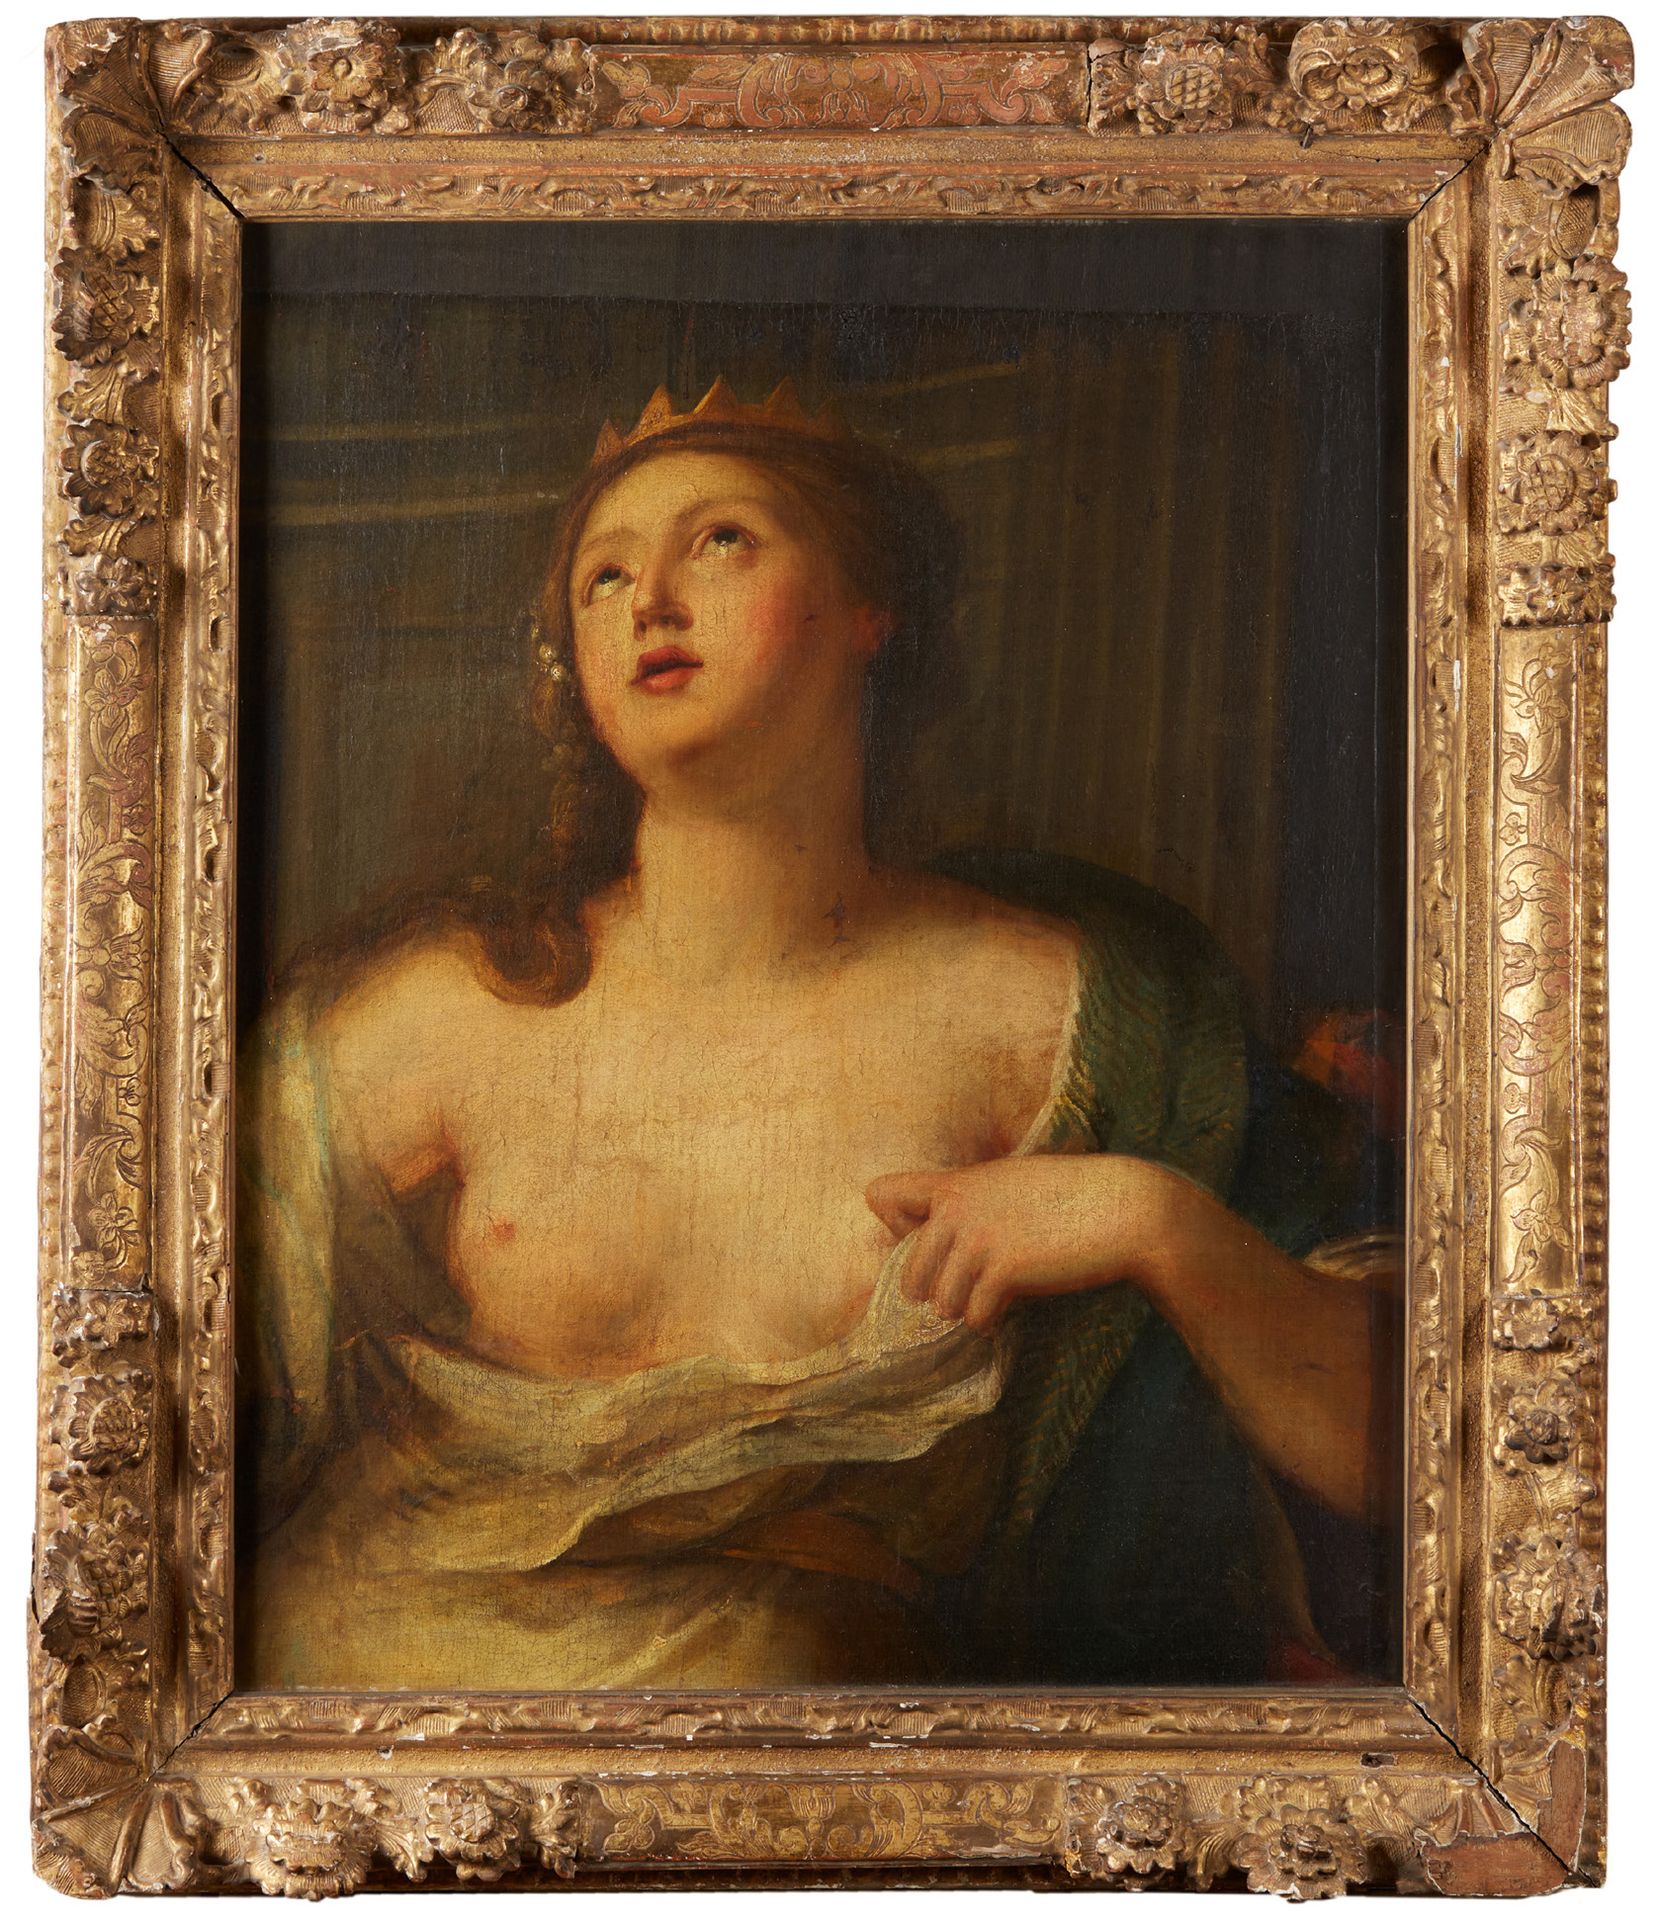 ECOLE ITALIENNE DU XVIIe SIÈCLE, SUIVEUR DE GUIDO CAGNACCI Cleopatra
Canvas
74 x&hellip;